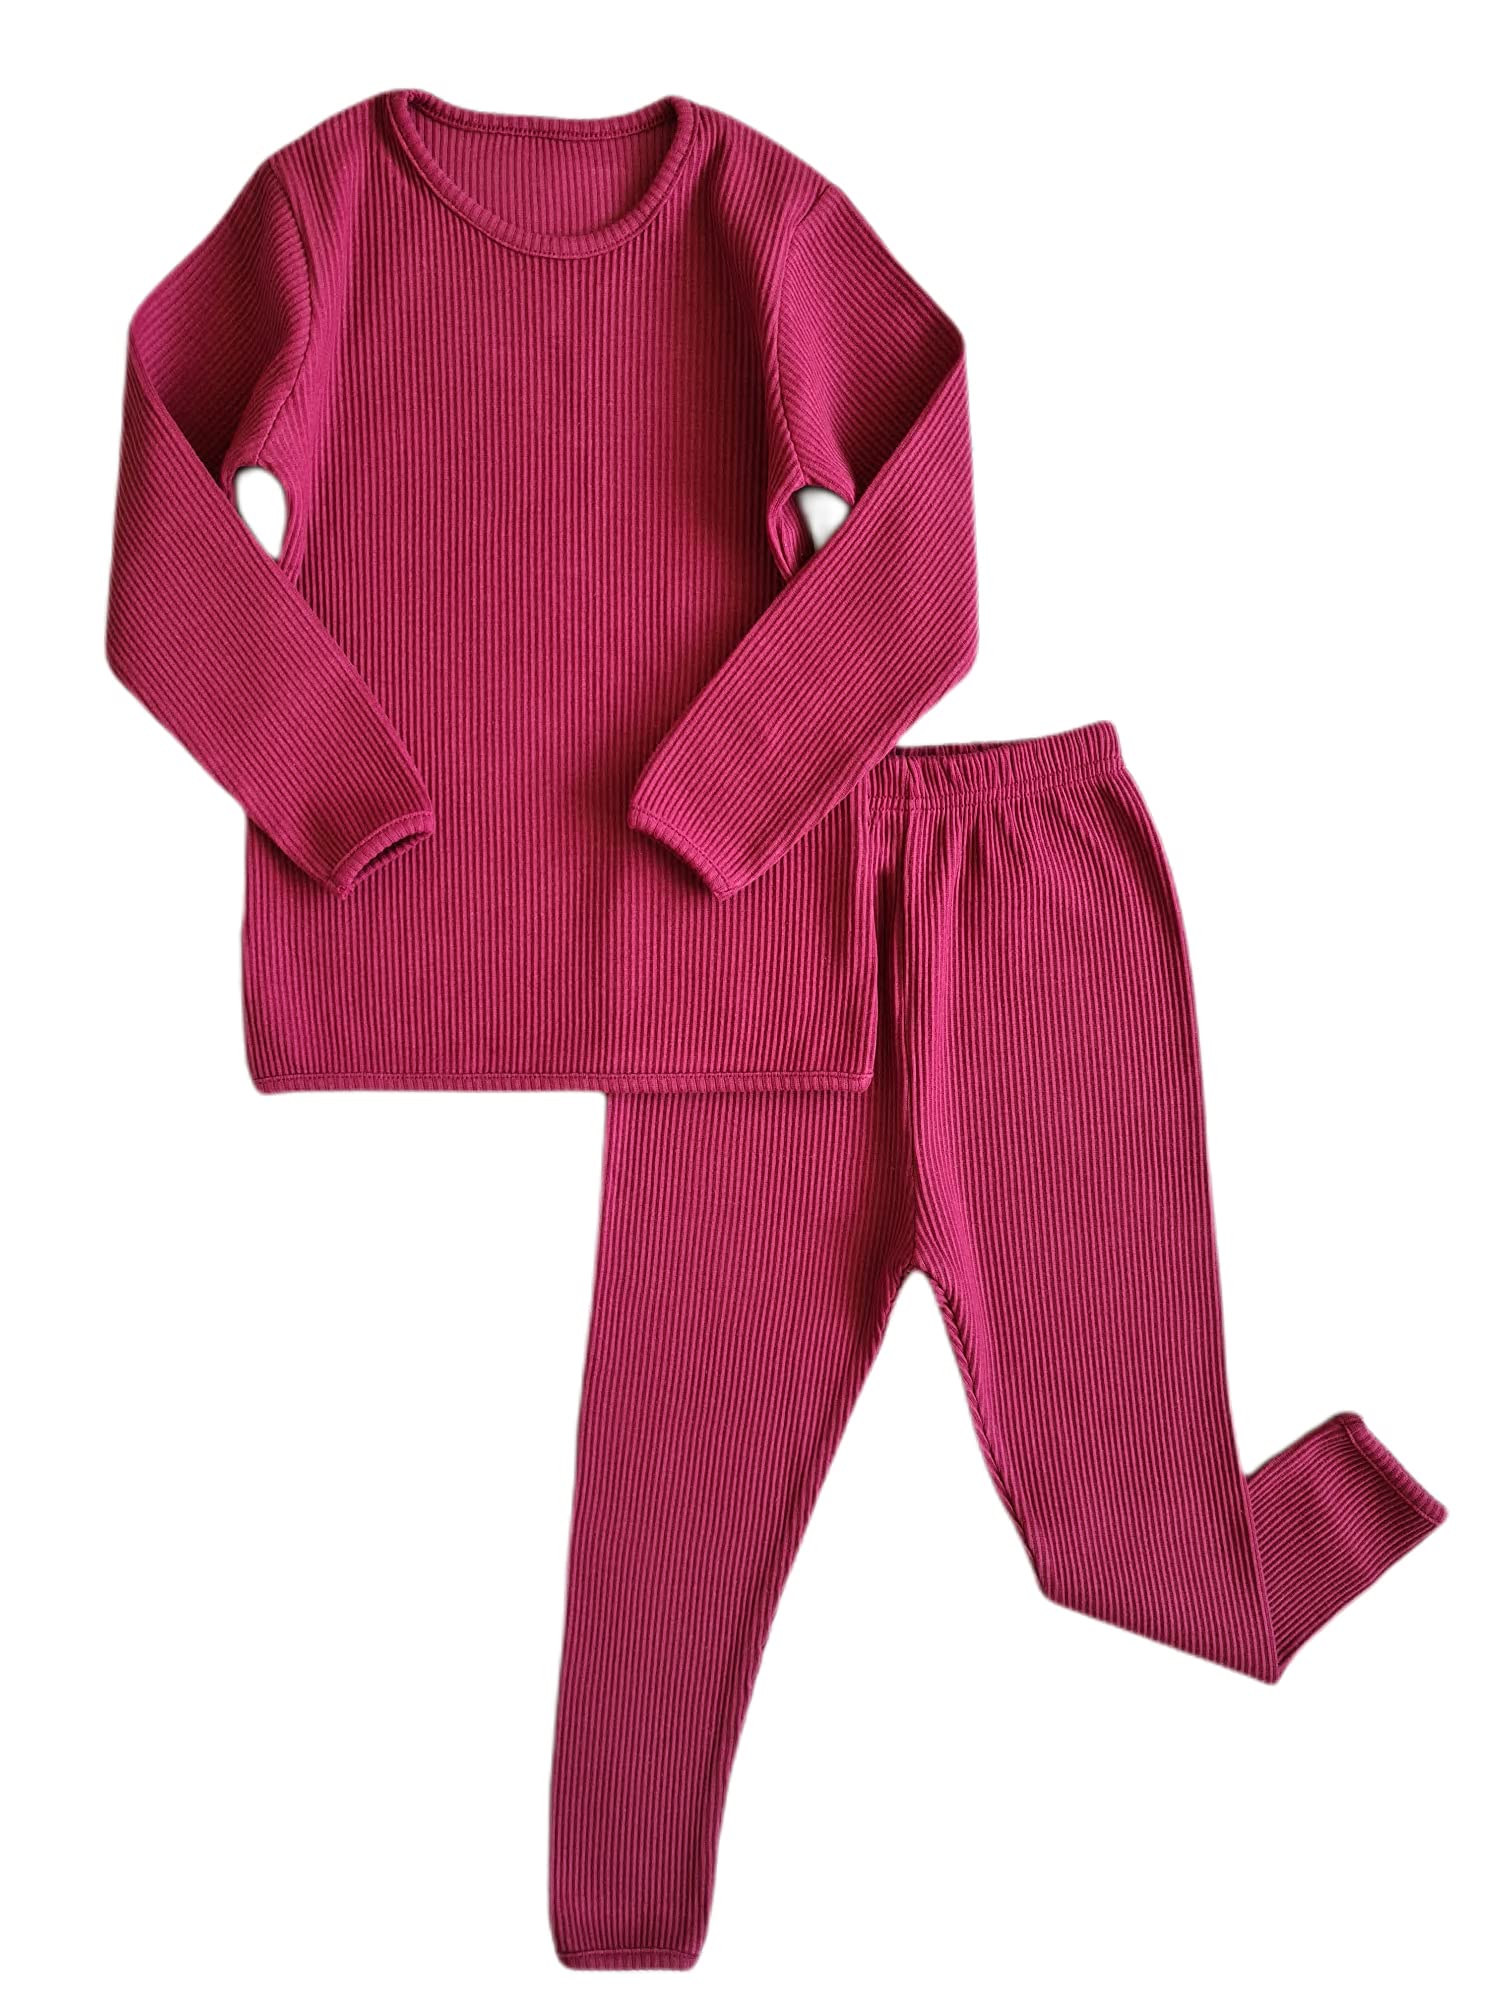 DreamBuy 20 Farben Gerippter Pyjama/Trainingsanzug/Loungewear Unisex Jungen und Mädchen Pyjamas Babykleidung Pyjamas für Frauen und Herren Pyjamas (M, Rotweinrot)